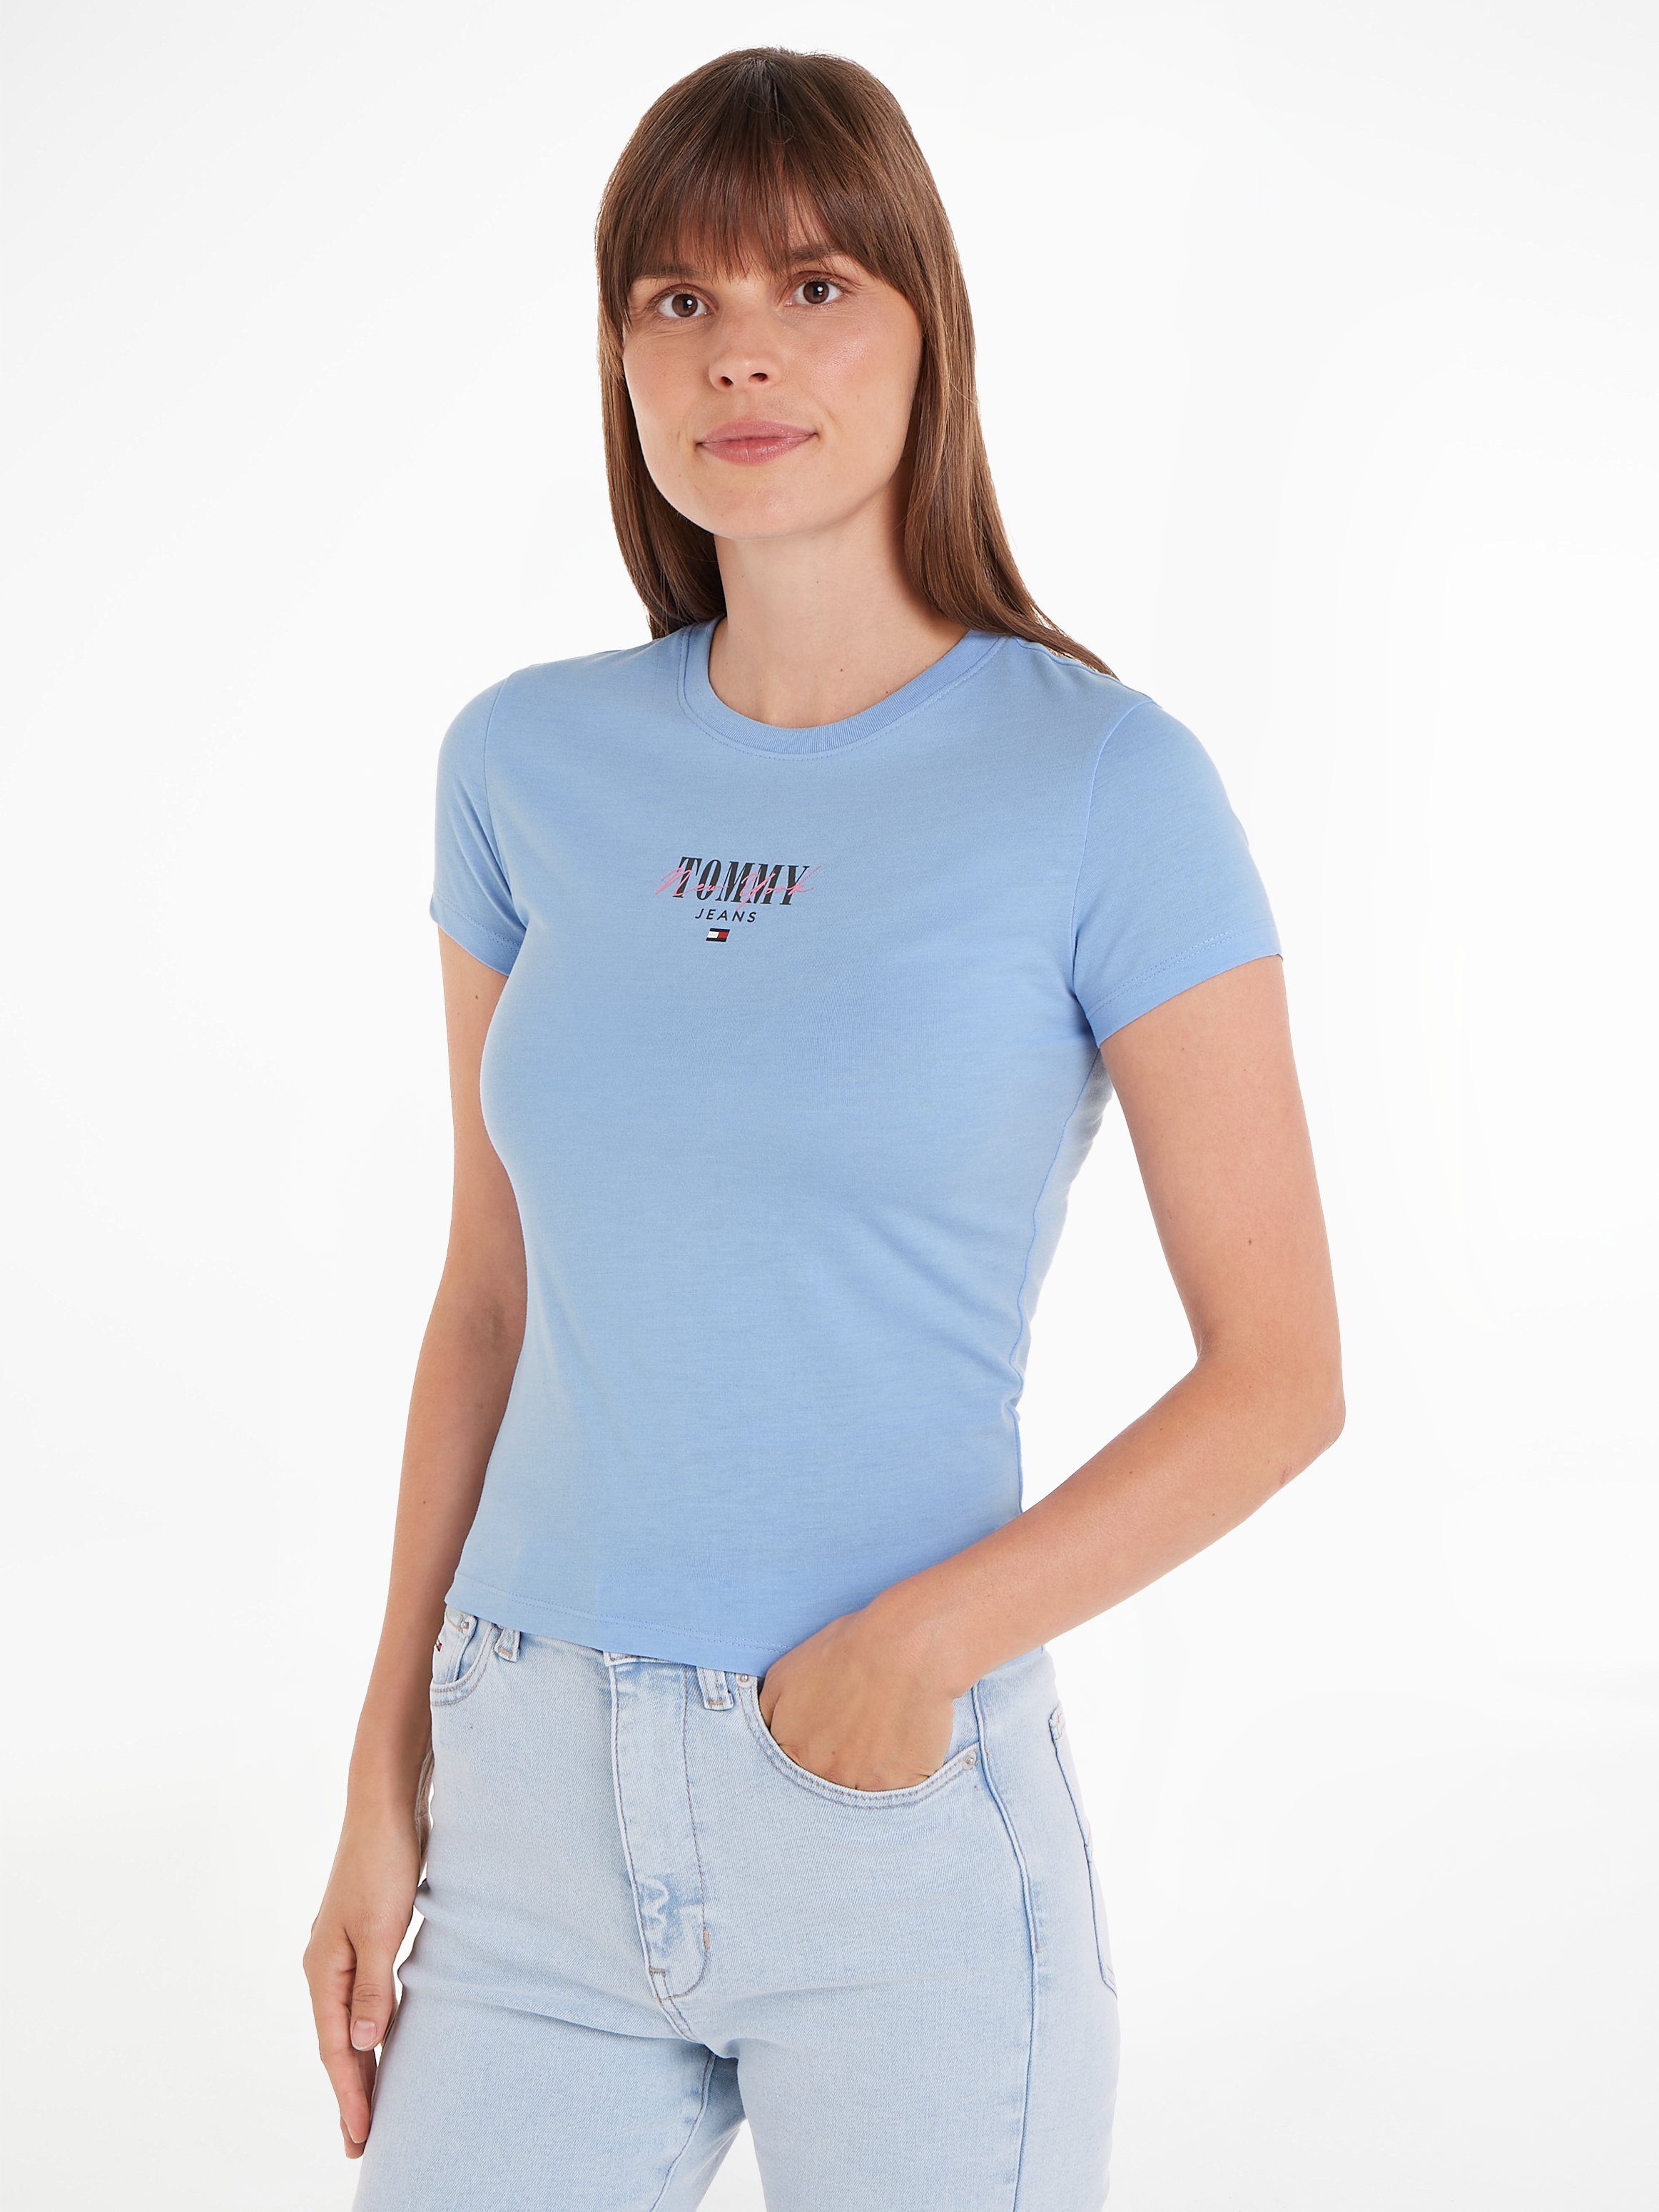 Gestreifte Tommy Hilfiger Shirts für Damen kaufen | OTTO